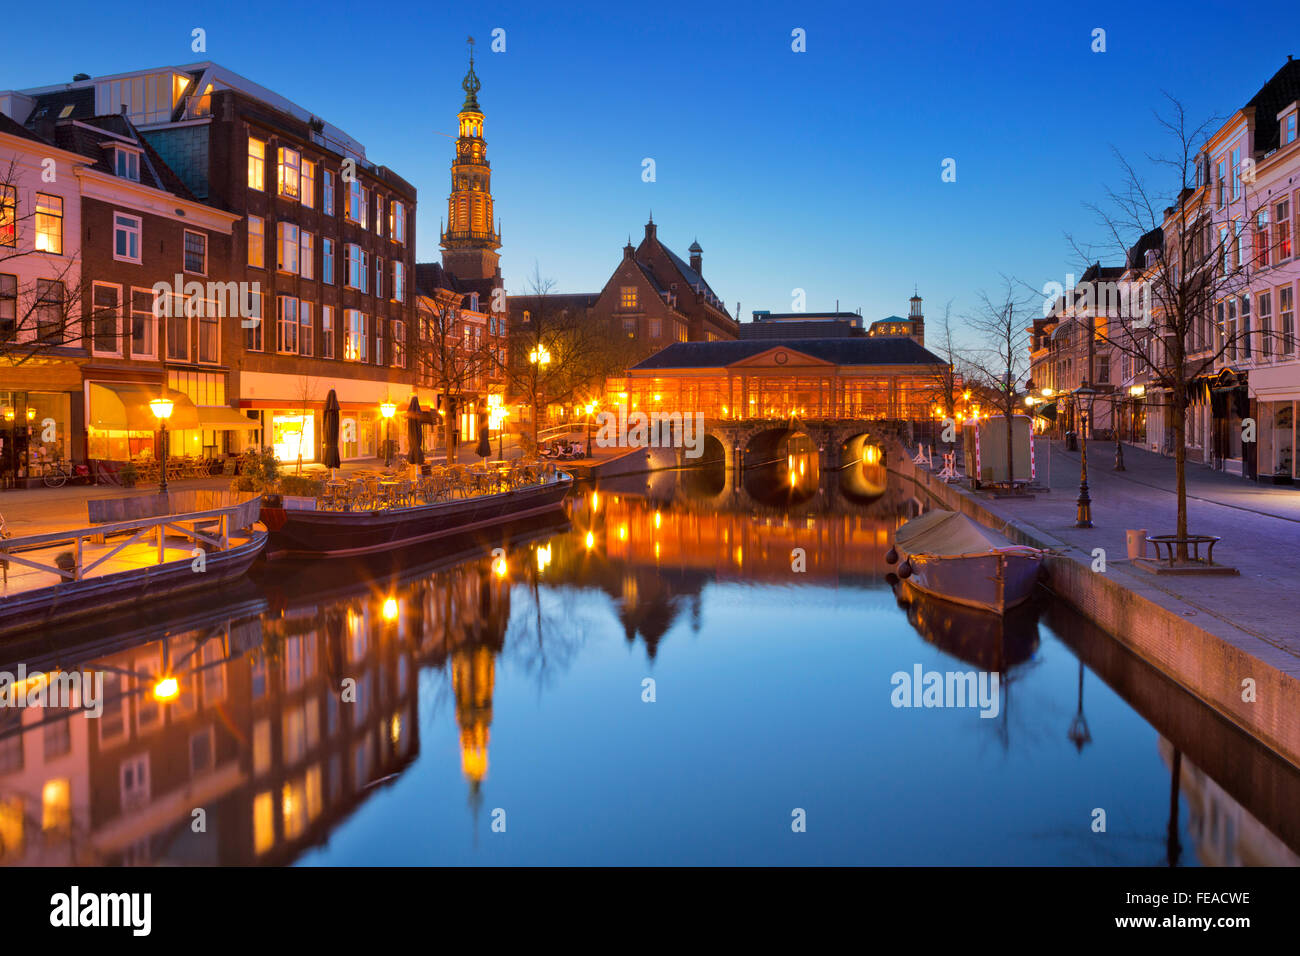 Le pont à l'Koornbrug Botermarkt dans la ville de Leiden aux Pays-Bas. Photographié dans la nuit. Banque D'Images